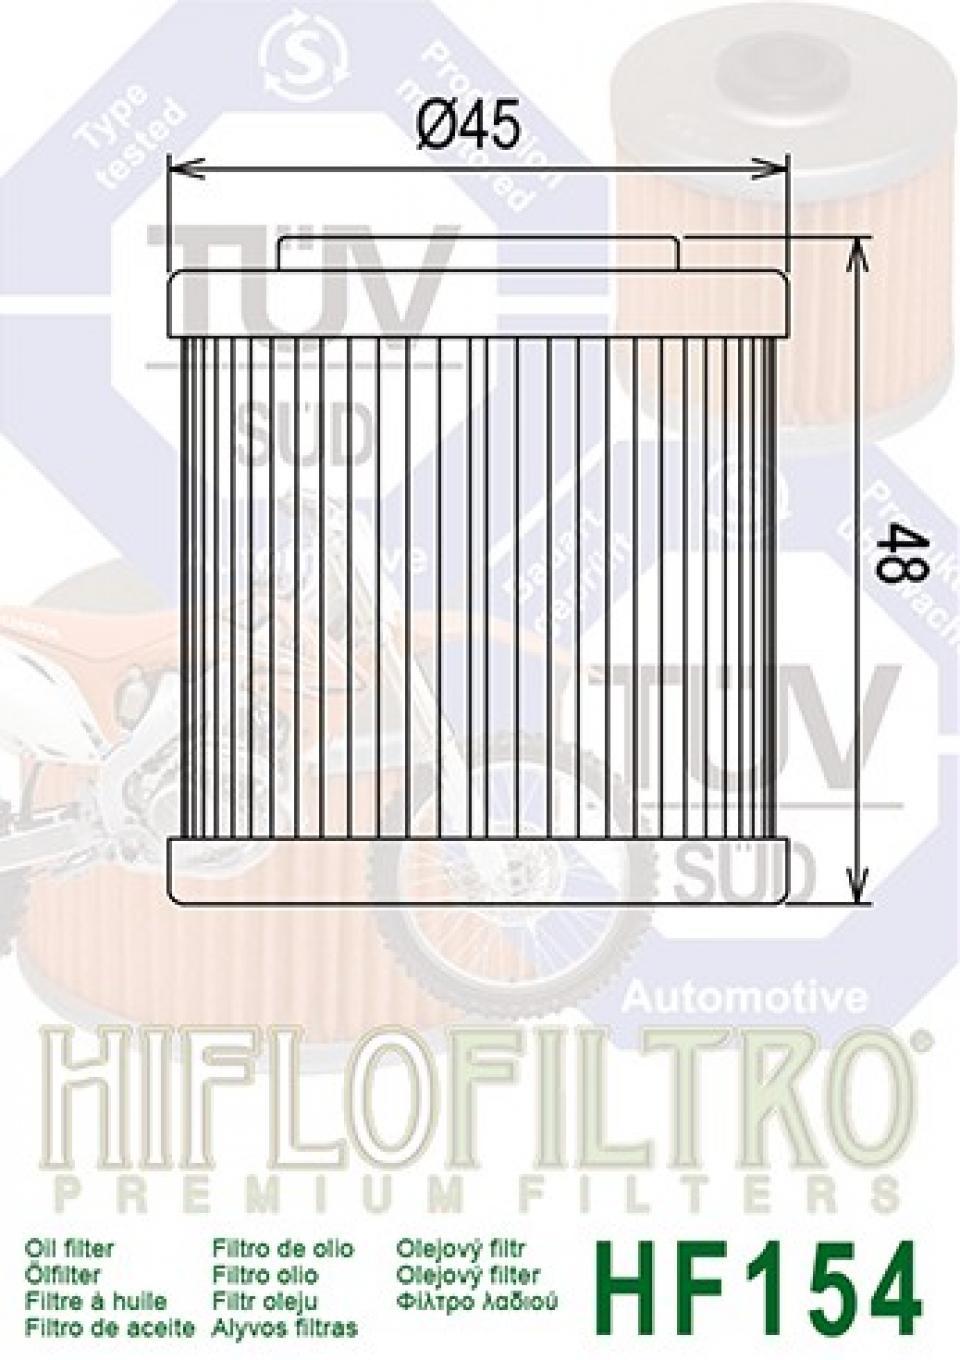 Filtre à huile Hiflo Filtro pour Moto Husqvarna 570 SMR 2001-2004 Neuf